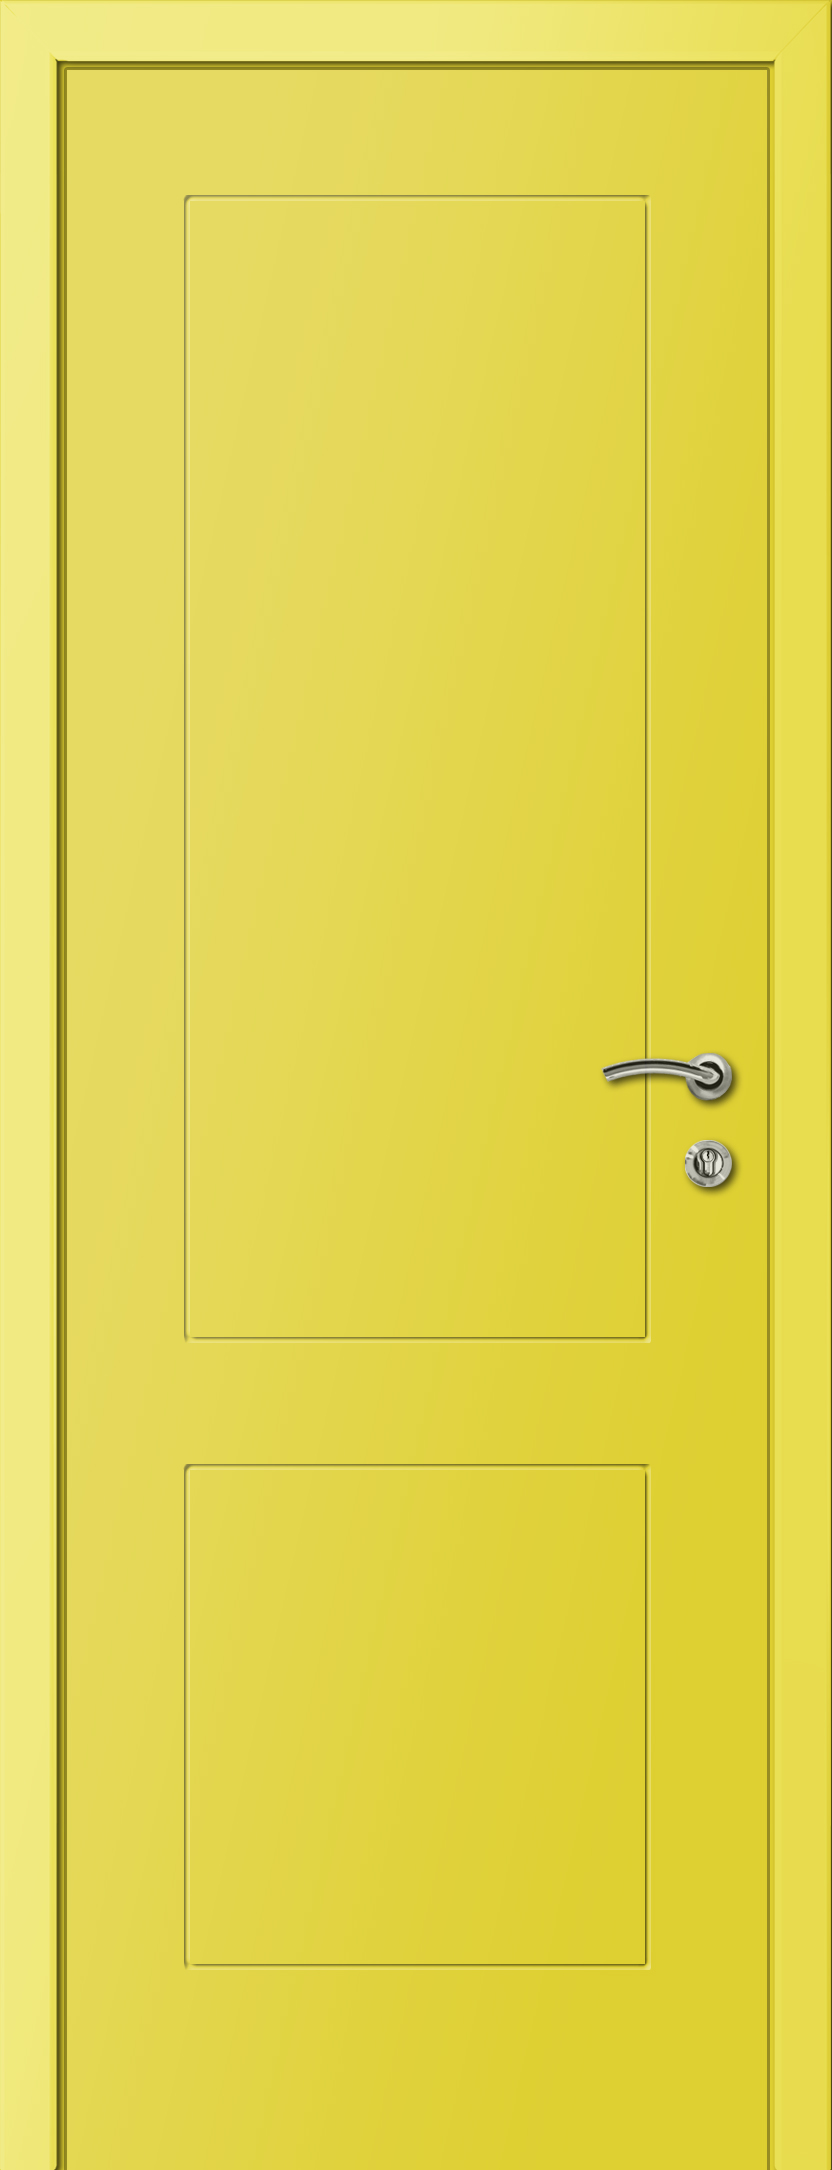 Пластиковая дверь KAPELLI multicolor Желтый Ф2К RAL 1018